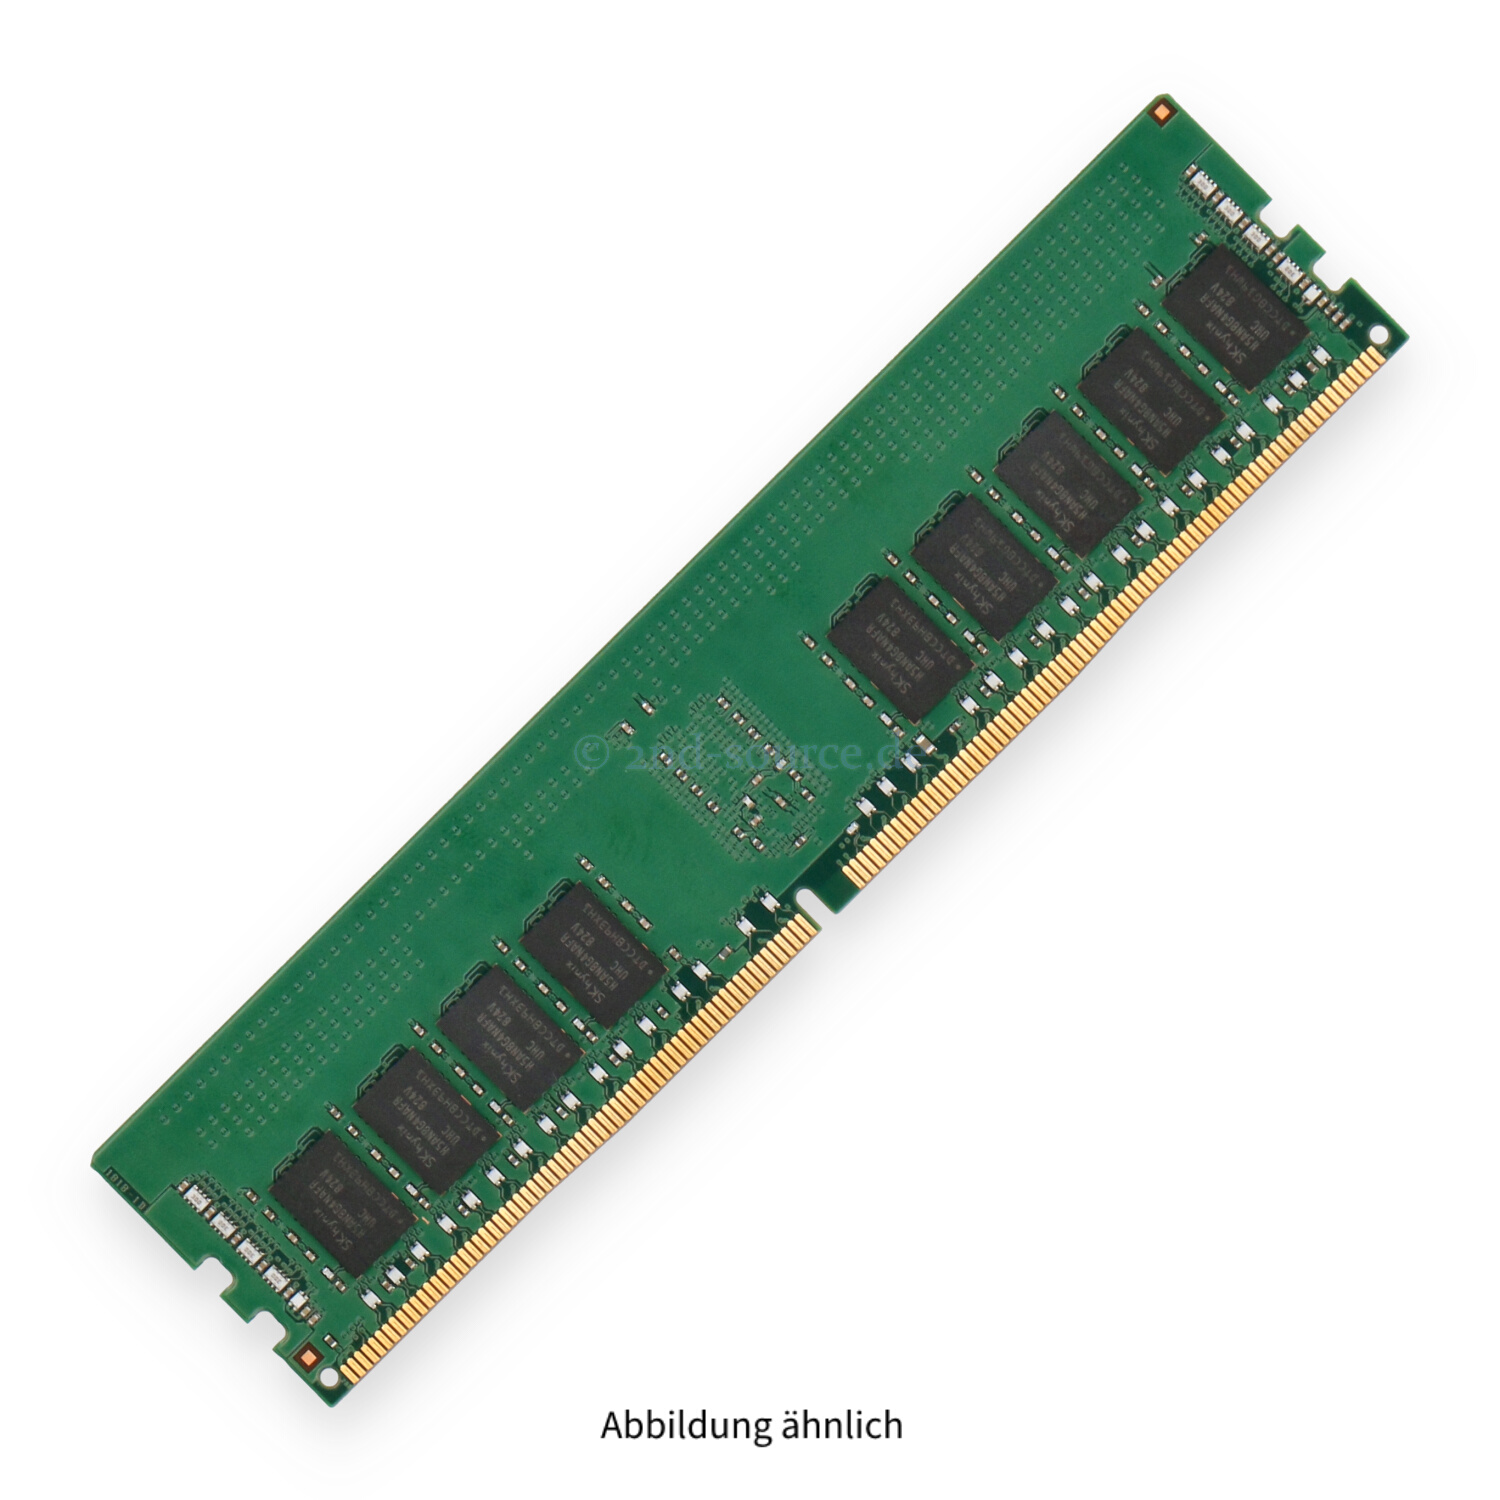 Hynix 16GB PC4-19200T-R DIMM Single Rank x4 (DDR4-2400) Registered ECC HMA82GR7AFR4N-UH